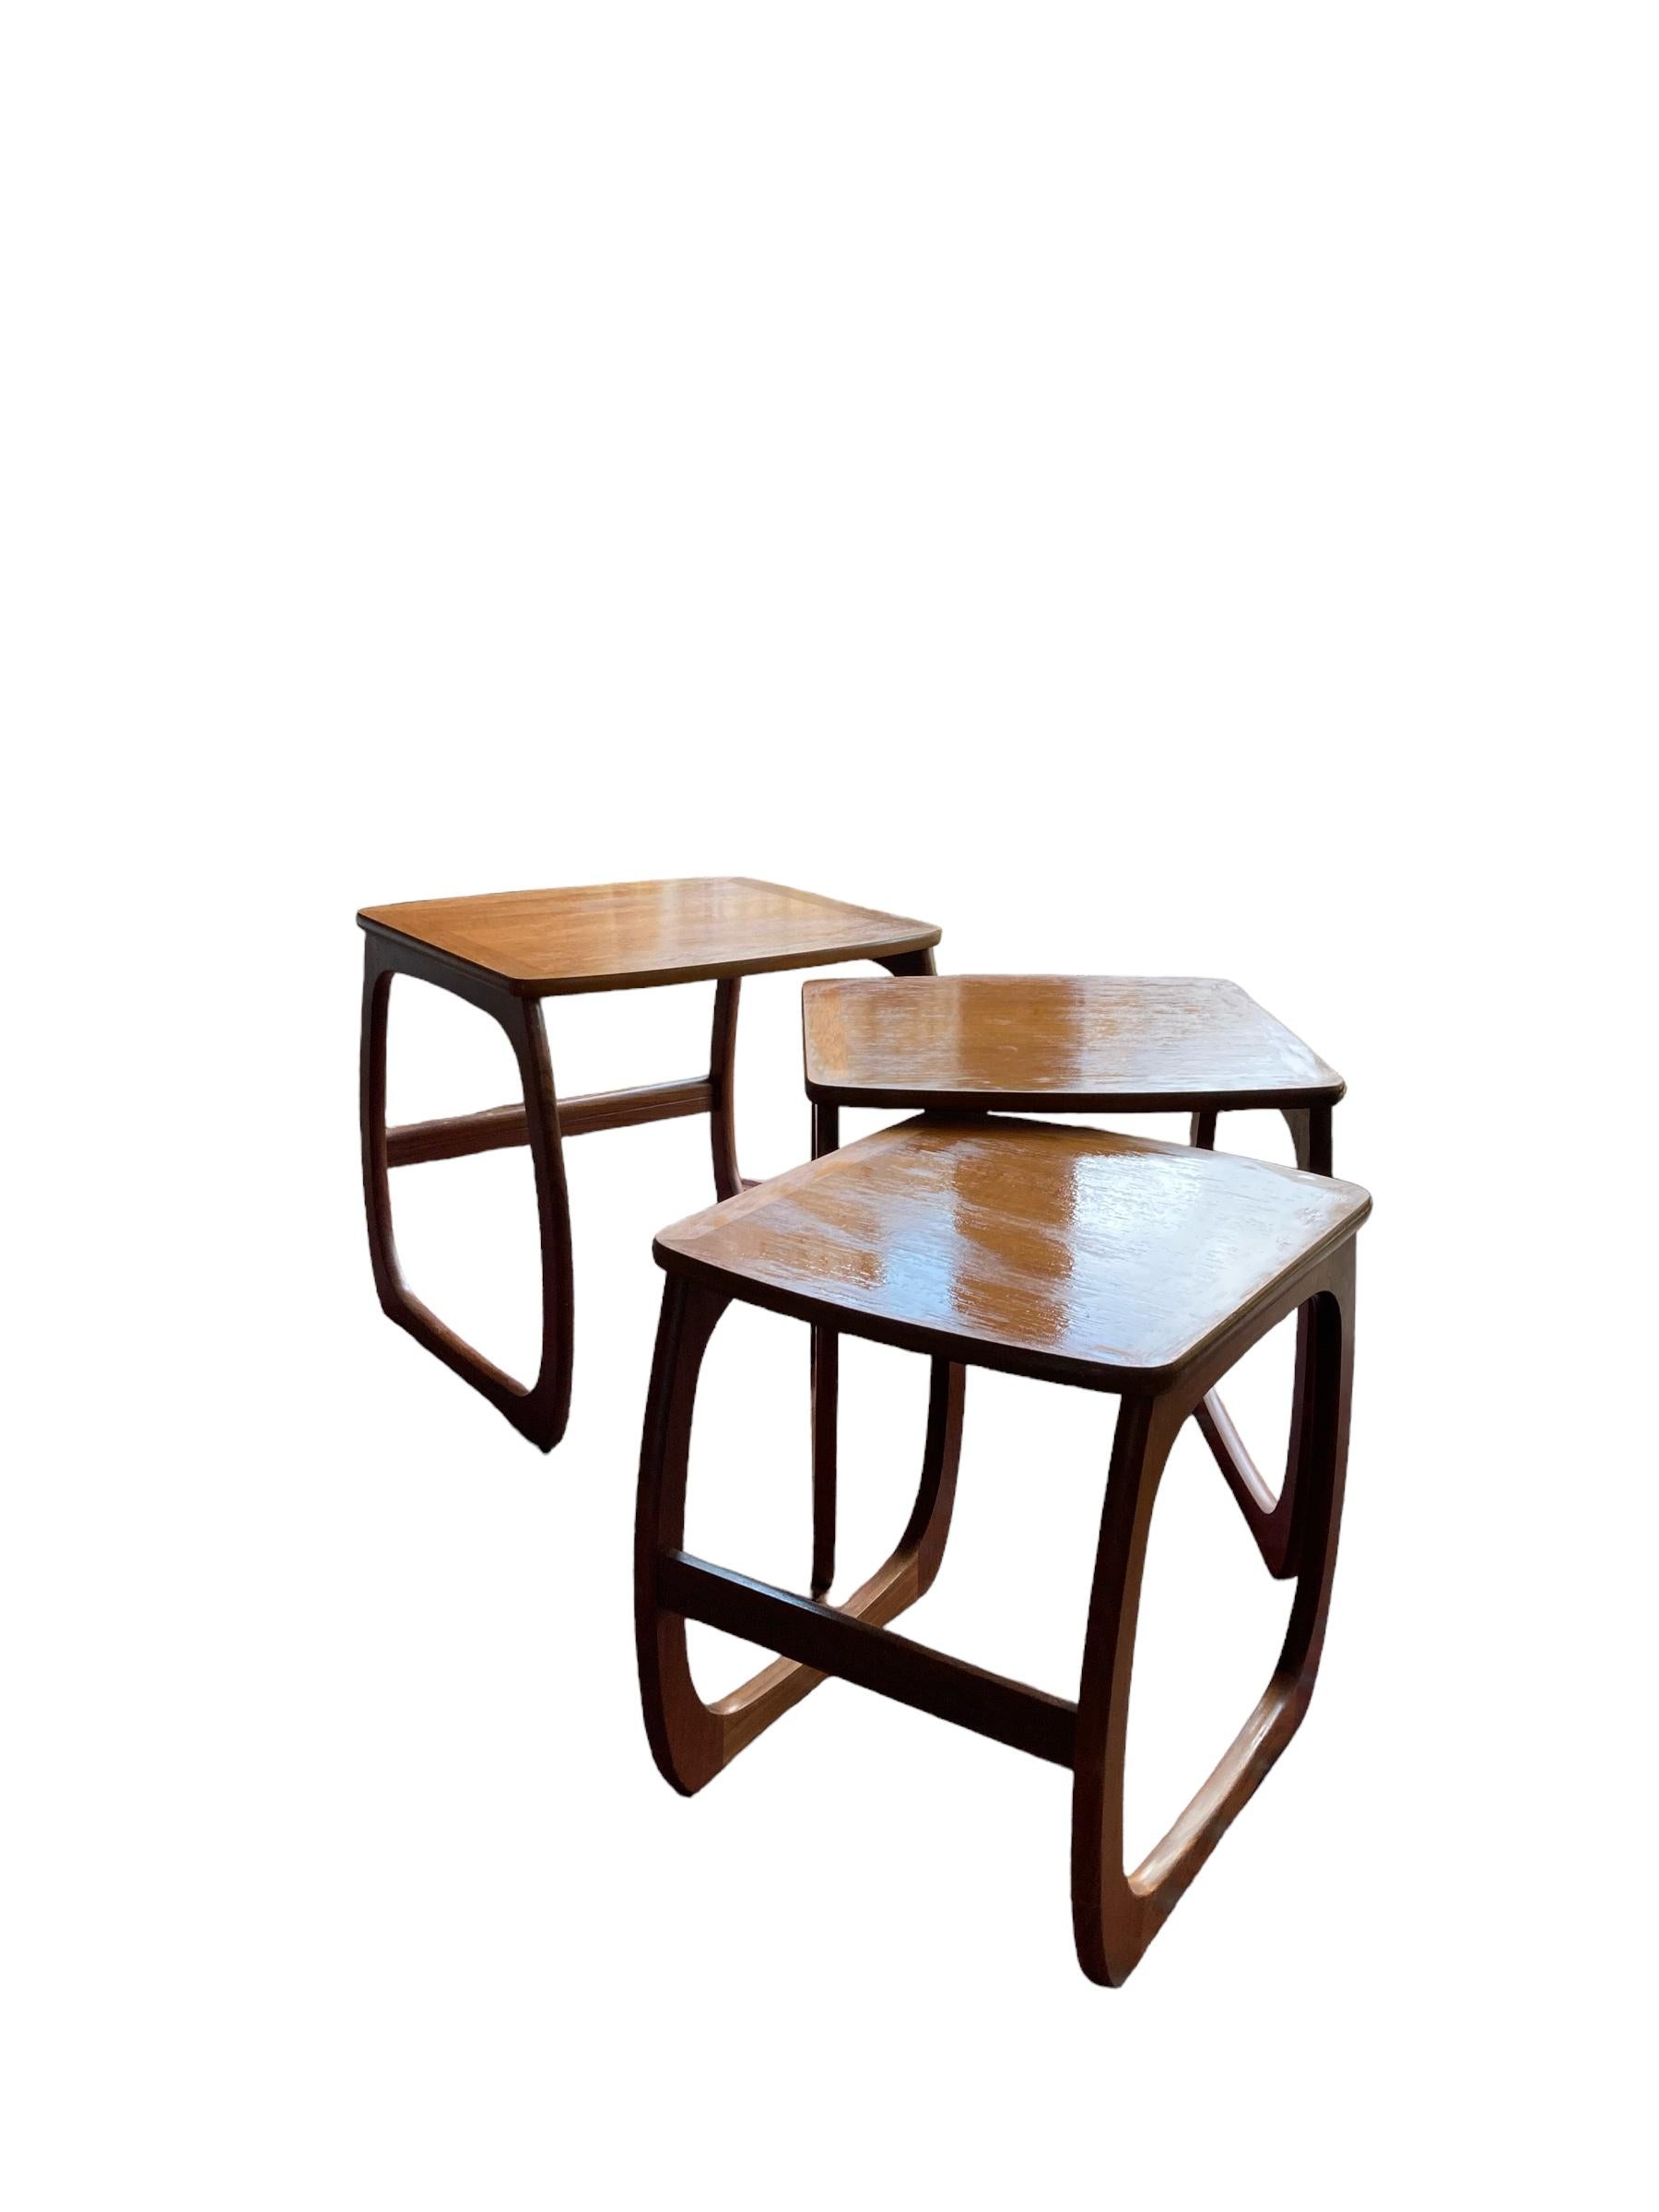 Nathan Nest aus Teakholz-Tischen, Mid Century Design mit elegant geschwungenen Beinen und einer glatten Platte. Mit Präzision und Liebe zum Detail gefertigt, sind diese Tische der Inbegriff von zeitloser Schönheit und Funktionalität. Sie sind aus